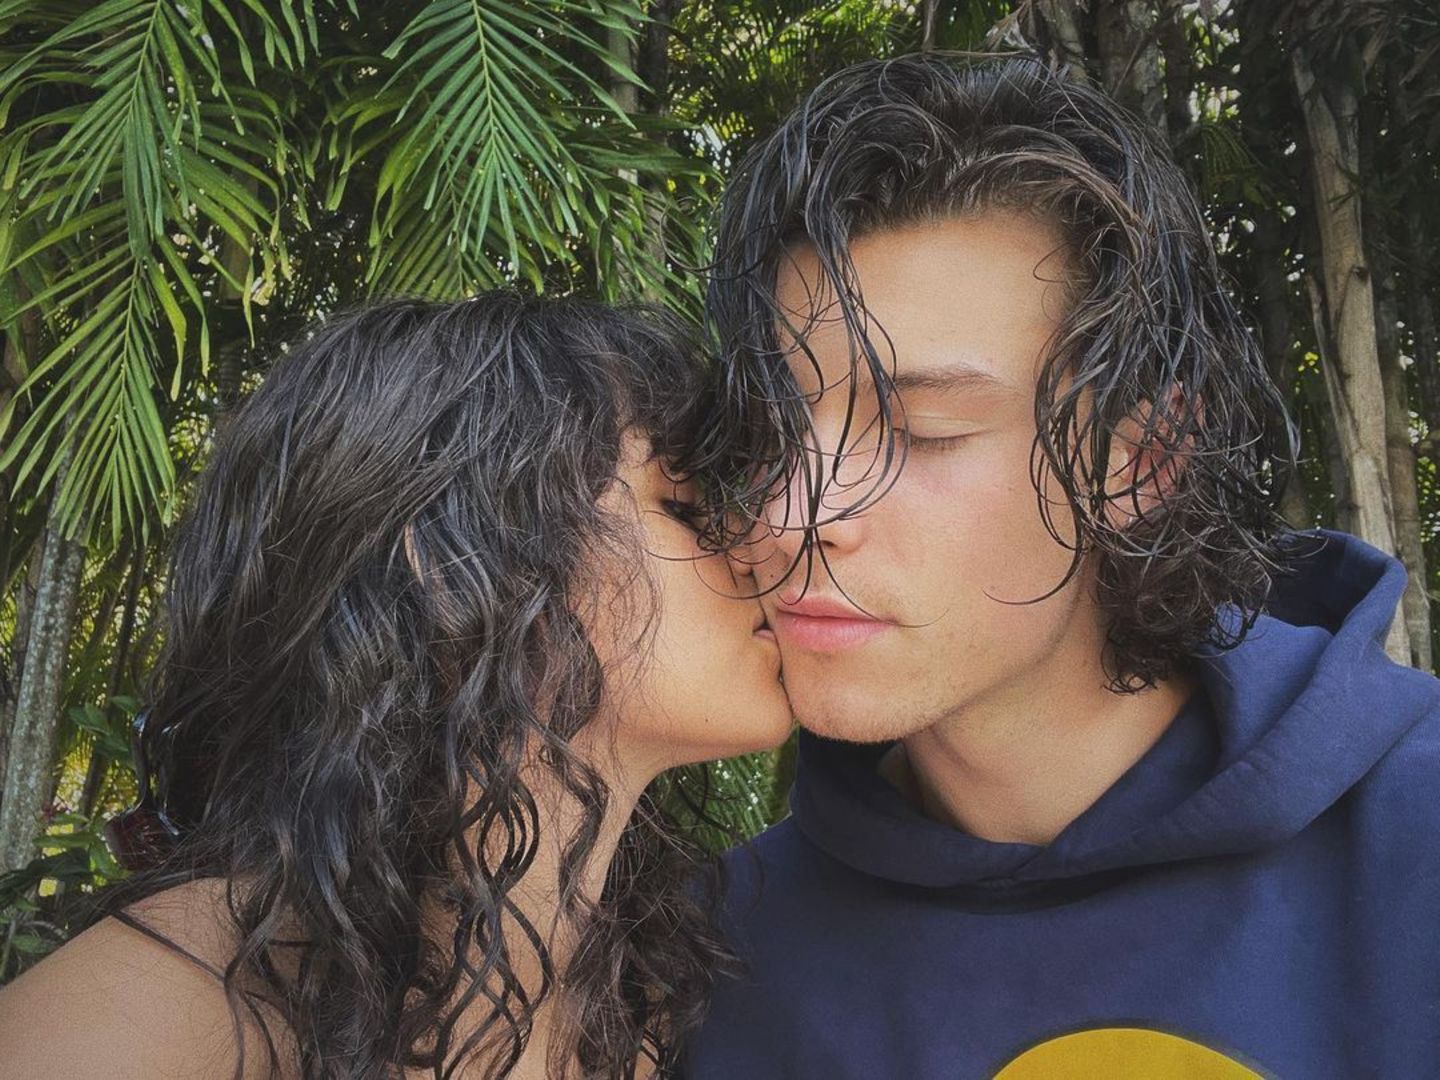 Camila Cabello und Shawn Mendes gehen in die Turtel-Offensive und zeigen der Welt, wie glücklich sie miteinander sind. Auf Instagram teilt der verliebte Sänger ein romantisches Foto mit seiner "Señorita", die ihm zärtlich einen Kuss gibt.